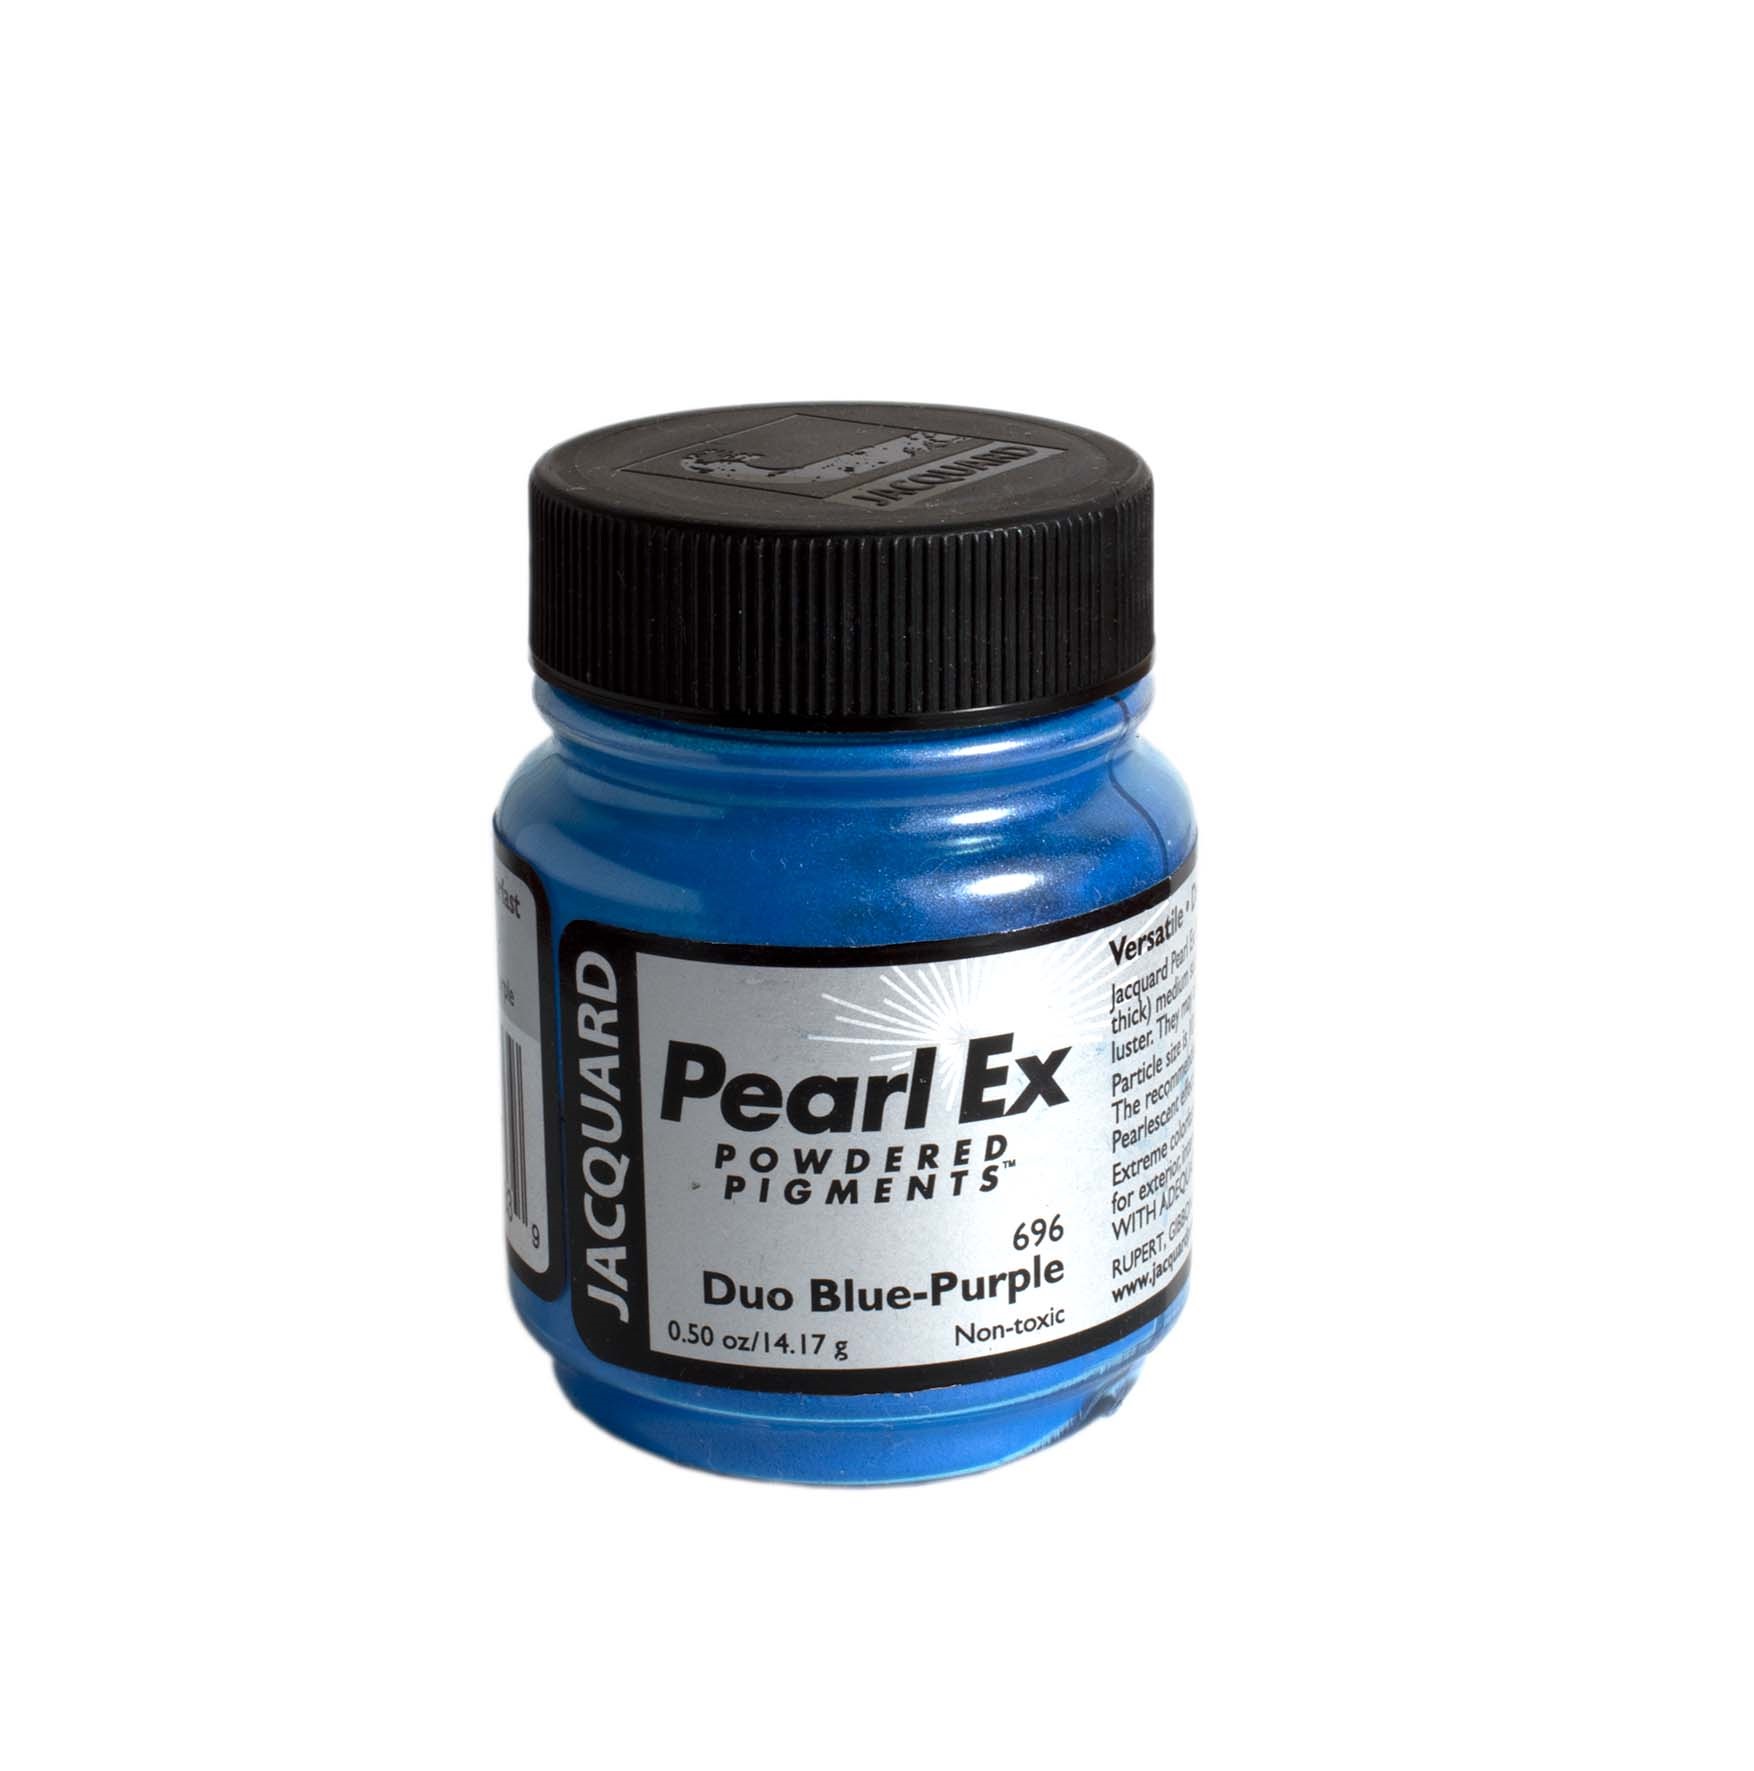 PIGMENTO PEARL EX DUO BLUE/PURPLE X 14,17 g